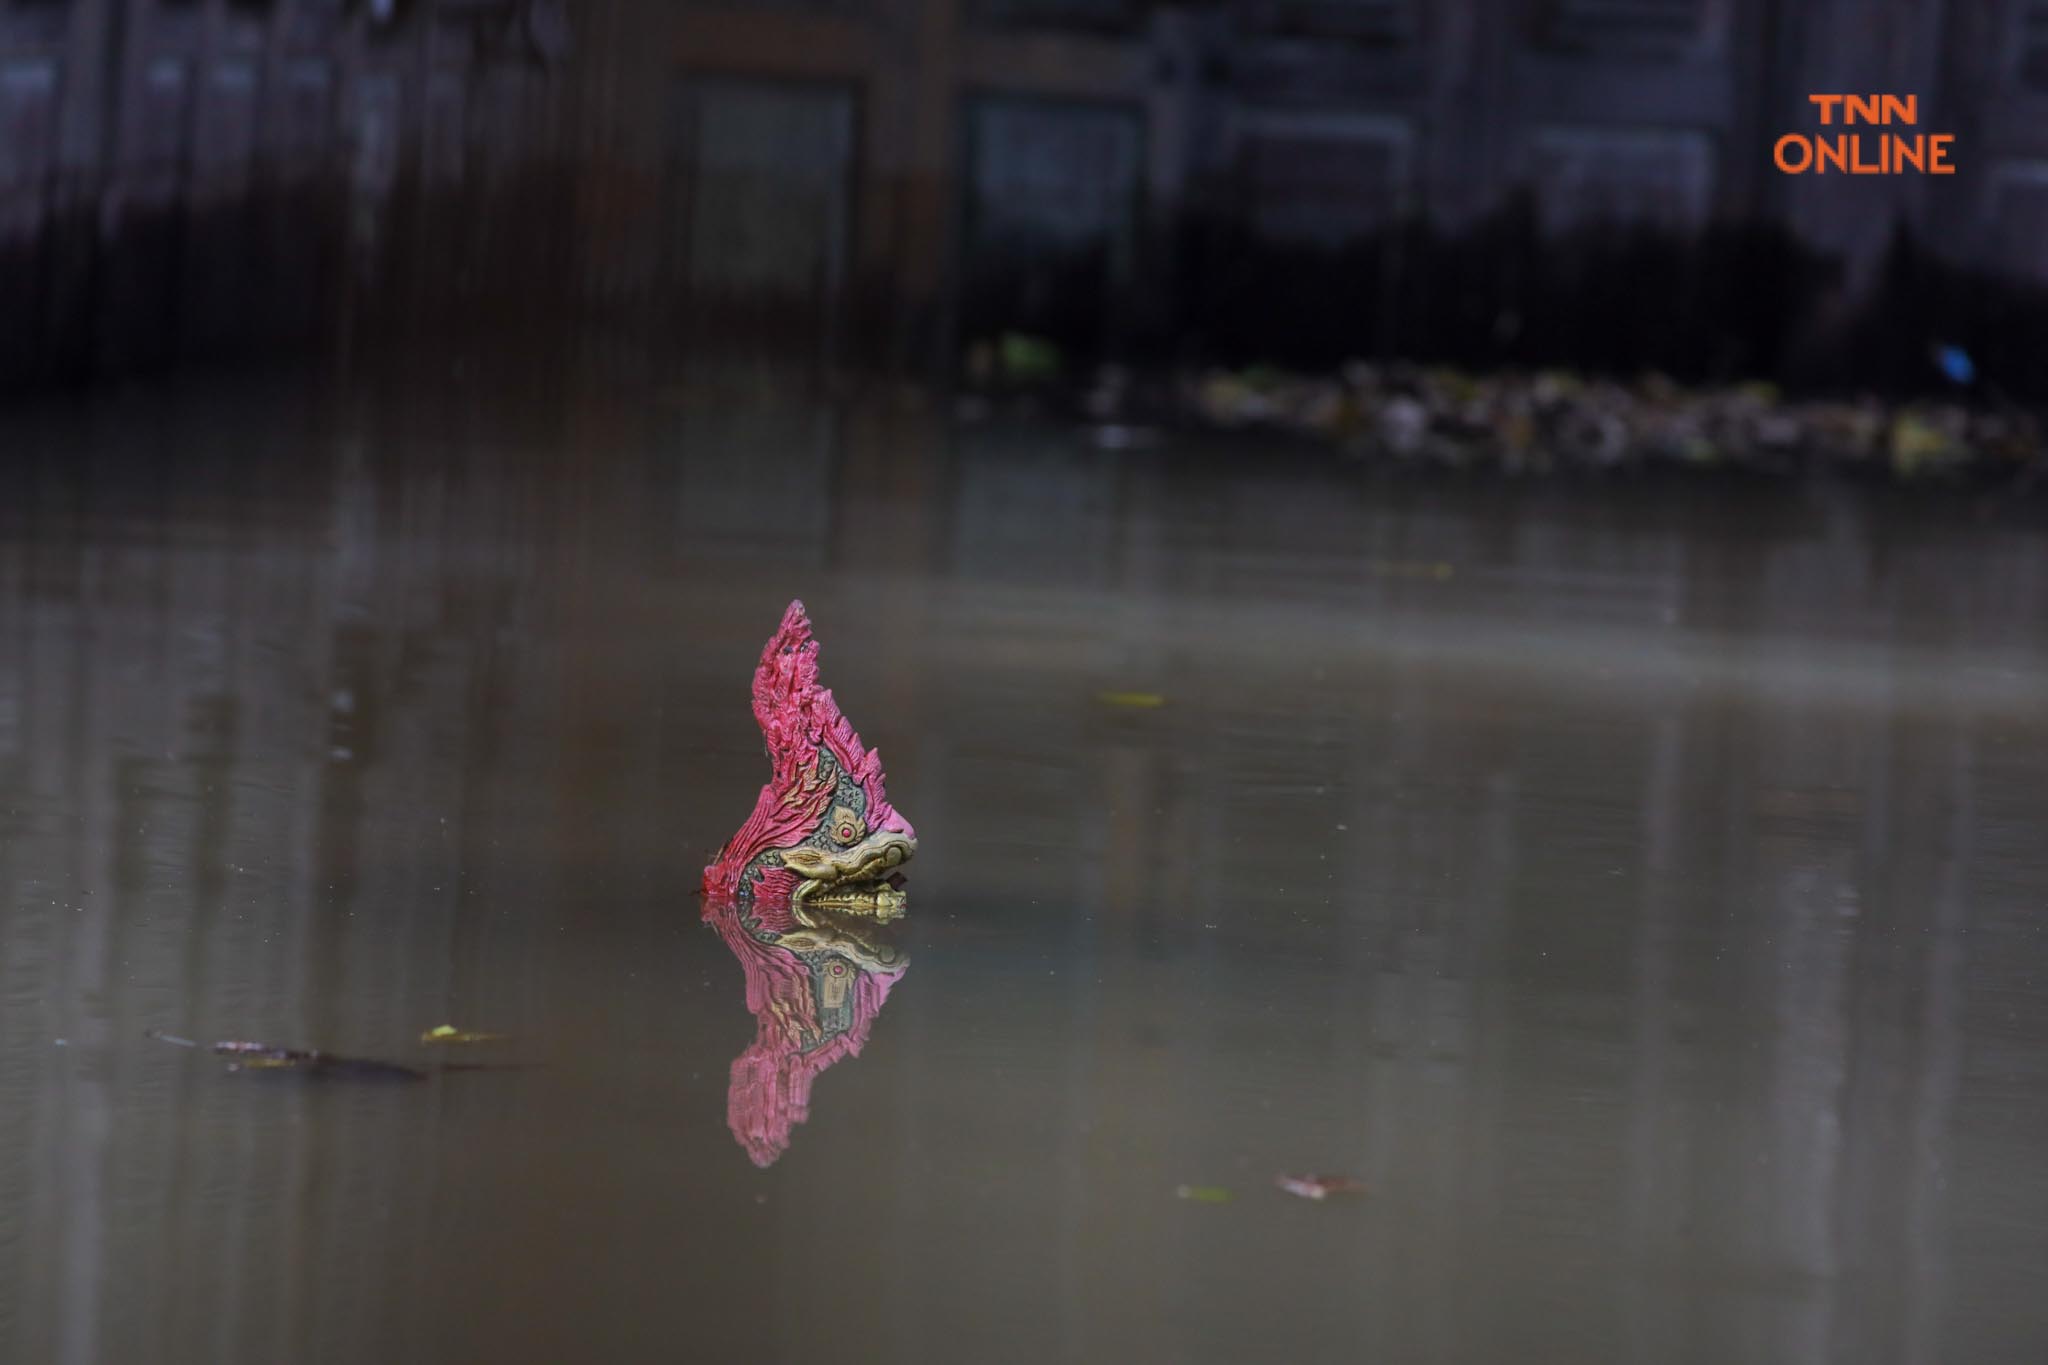 ประมวลภาพ พนังกั้นน้ำใต้สะพานซังฮี้แตกน้ำล้นท่วมผิวจราจร 